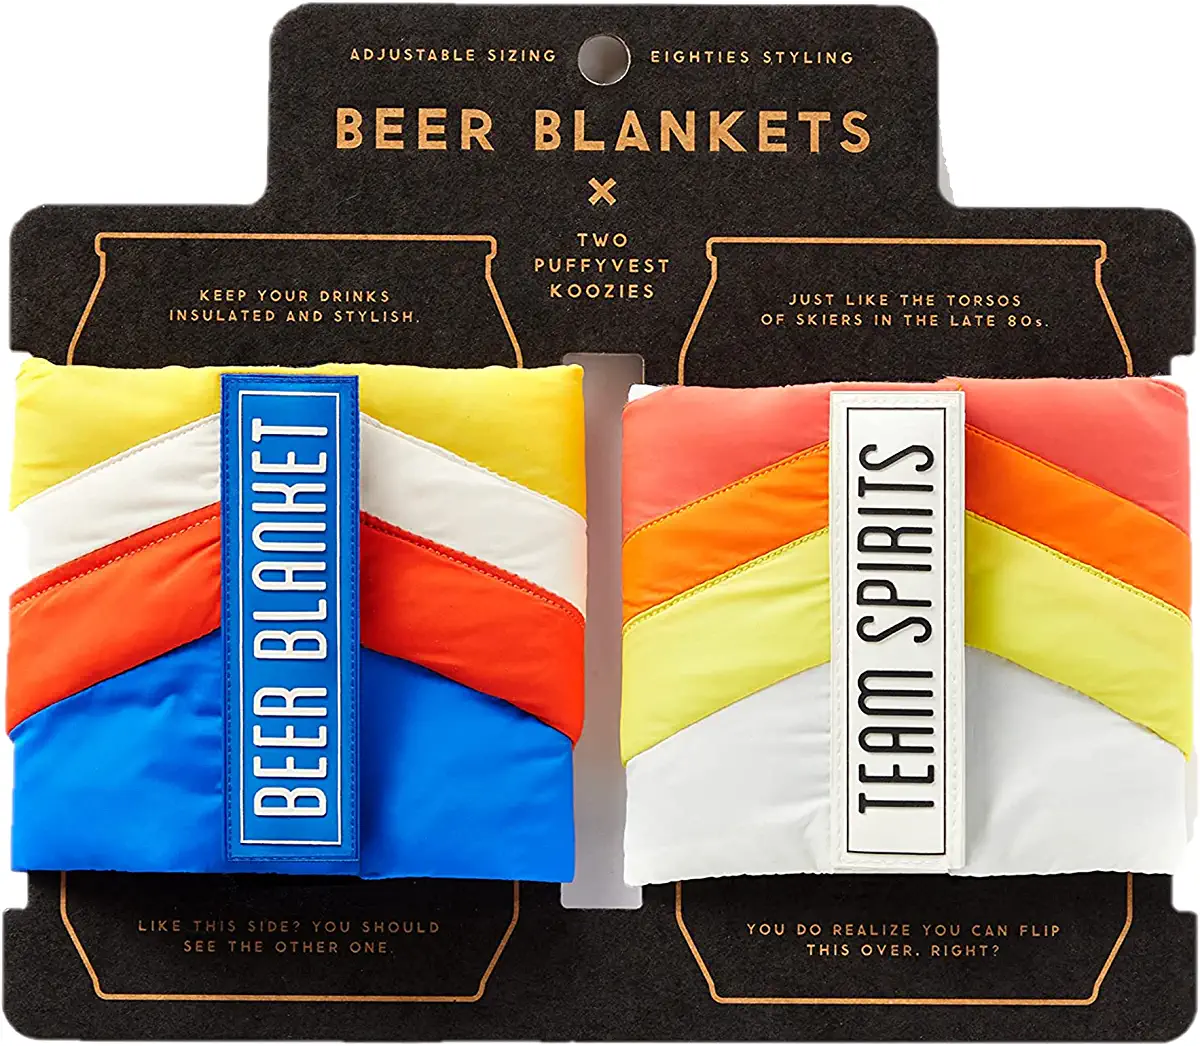 Beer Blanket Puffyvest Koozie Set